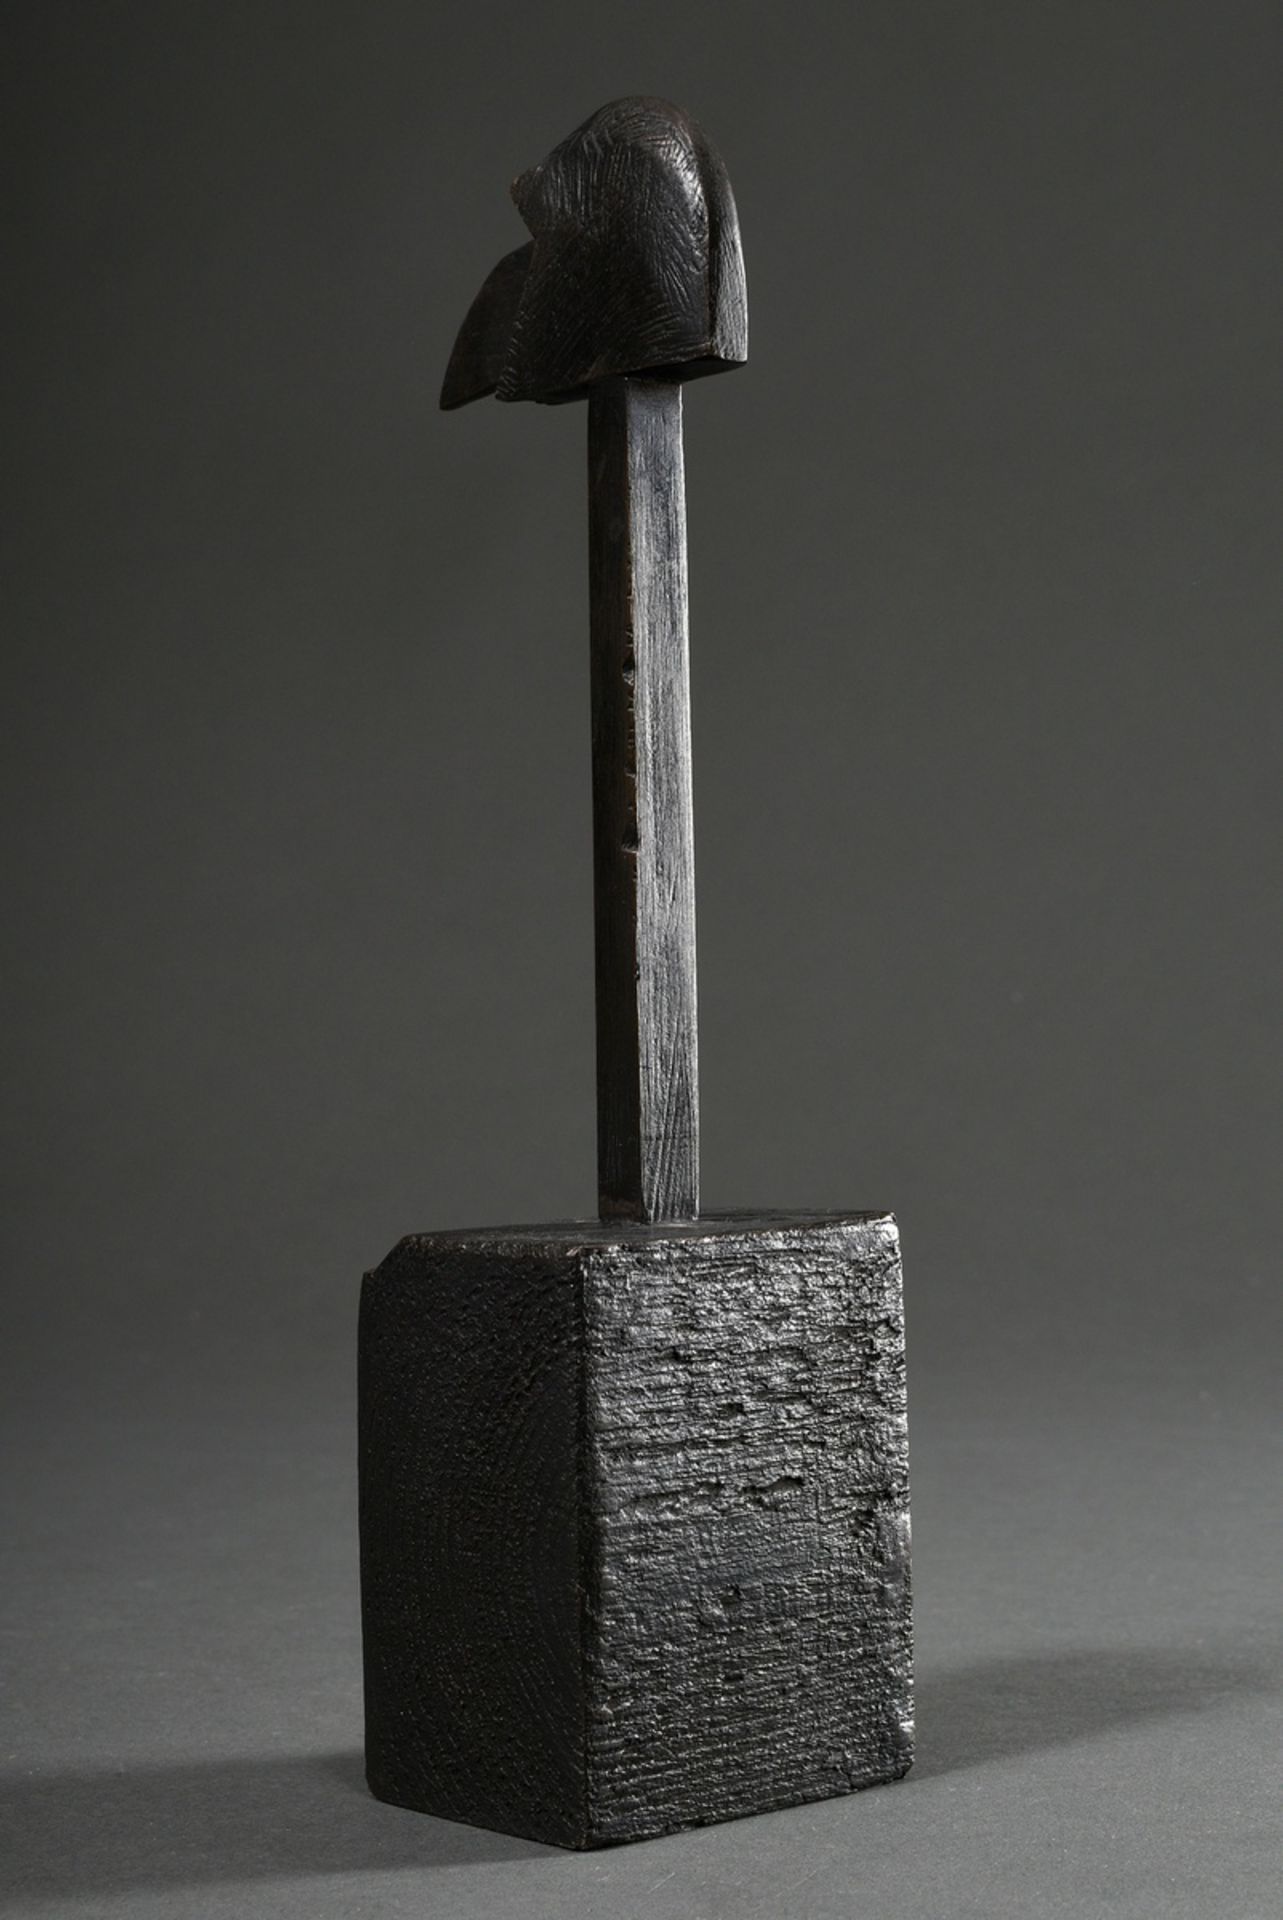 Kriester, Rainer (1935-2002) "Bird's head" 1998, bronze, monogrammed, inside inscribed "WV 981, dat - Image 3 of 6